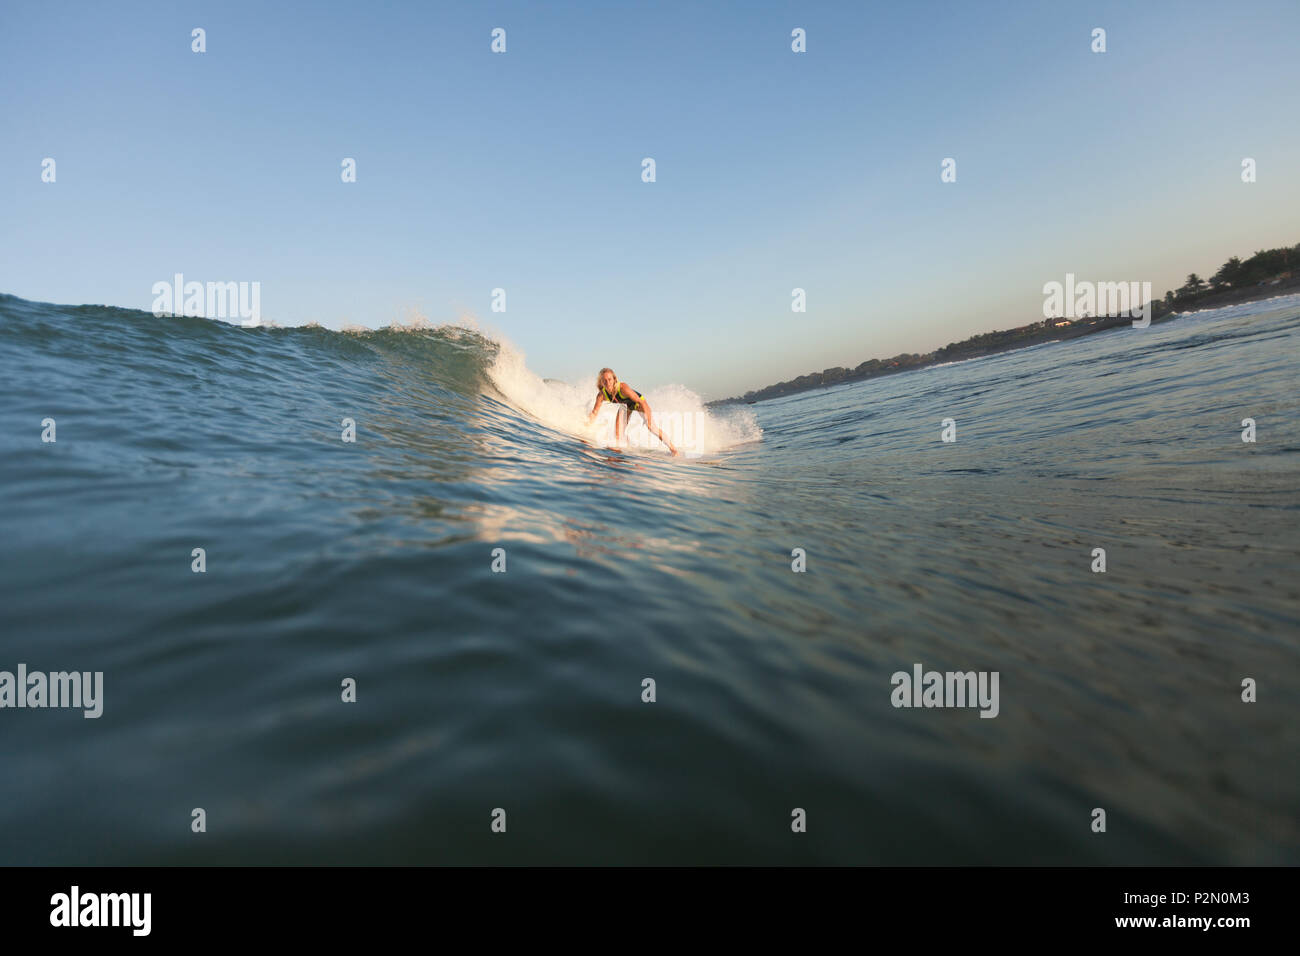 Sportlerin surft" auf der Welle auf Surf Board im Ozean Stockfoto